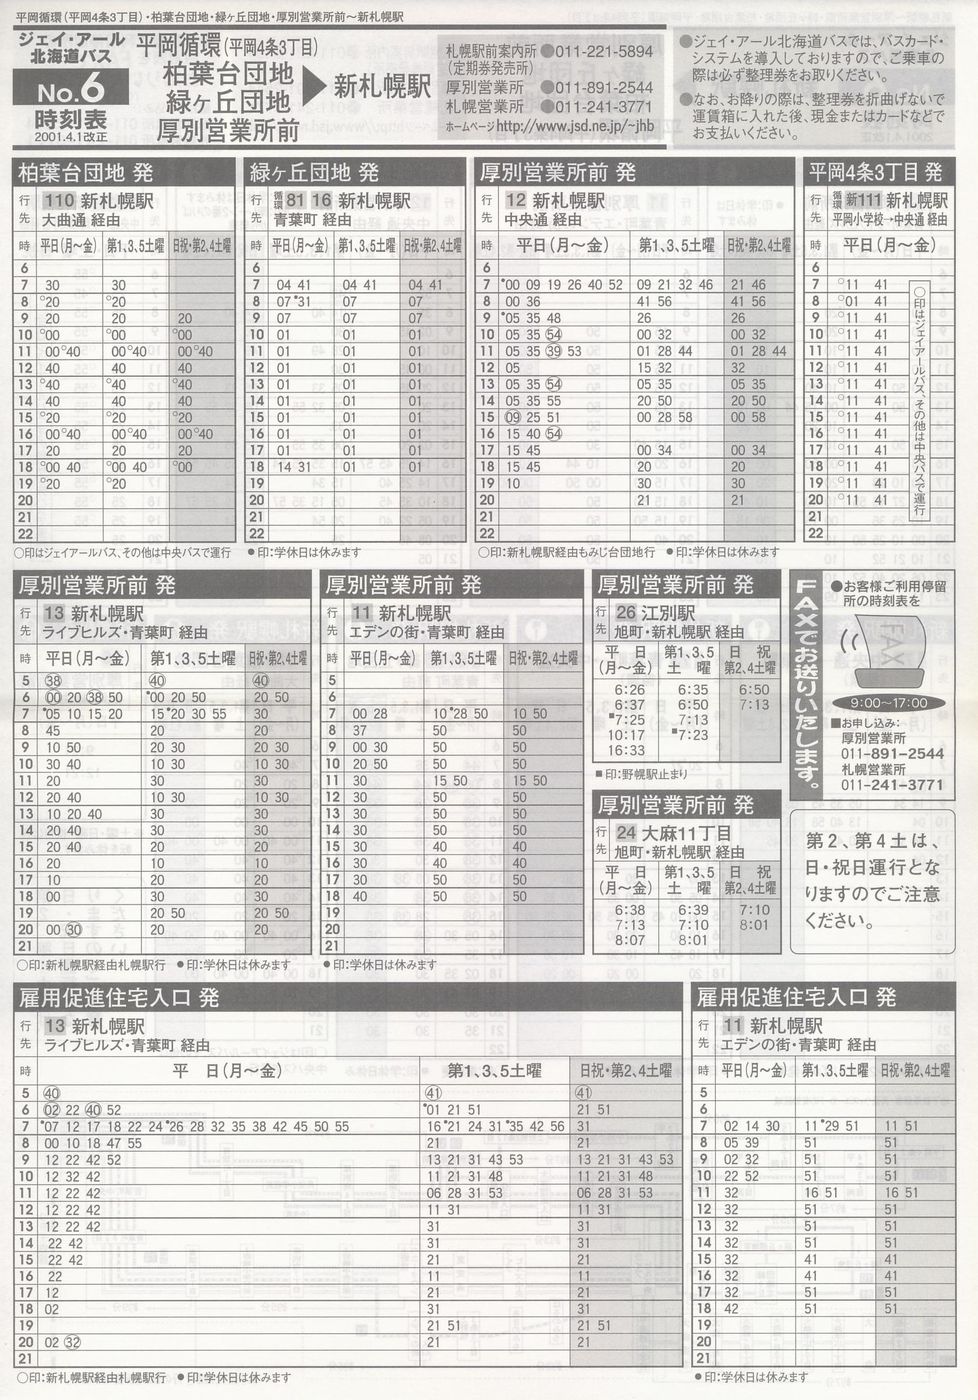 2001-04-01改正_ジェイ・アール北海道バス_空知線時刻表６表面